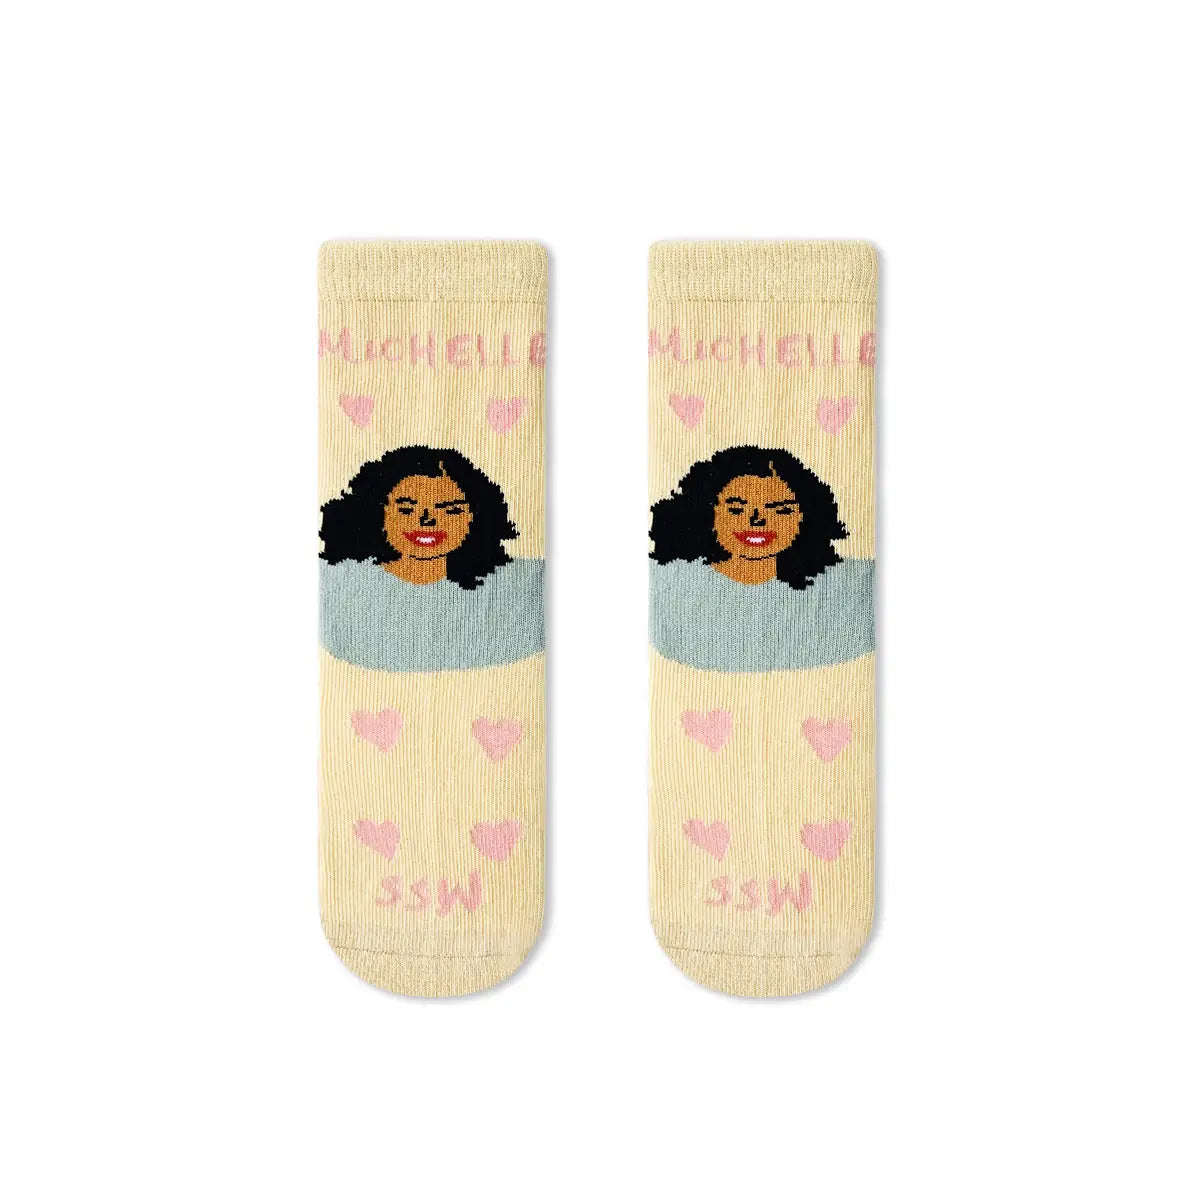 Michelle Obama Toddler Socks